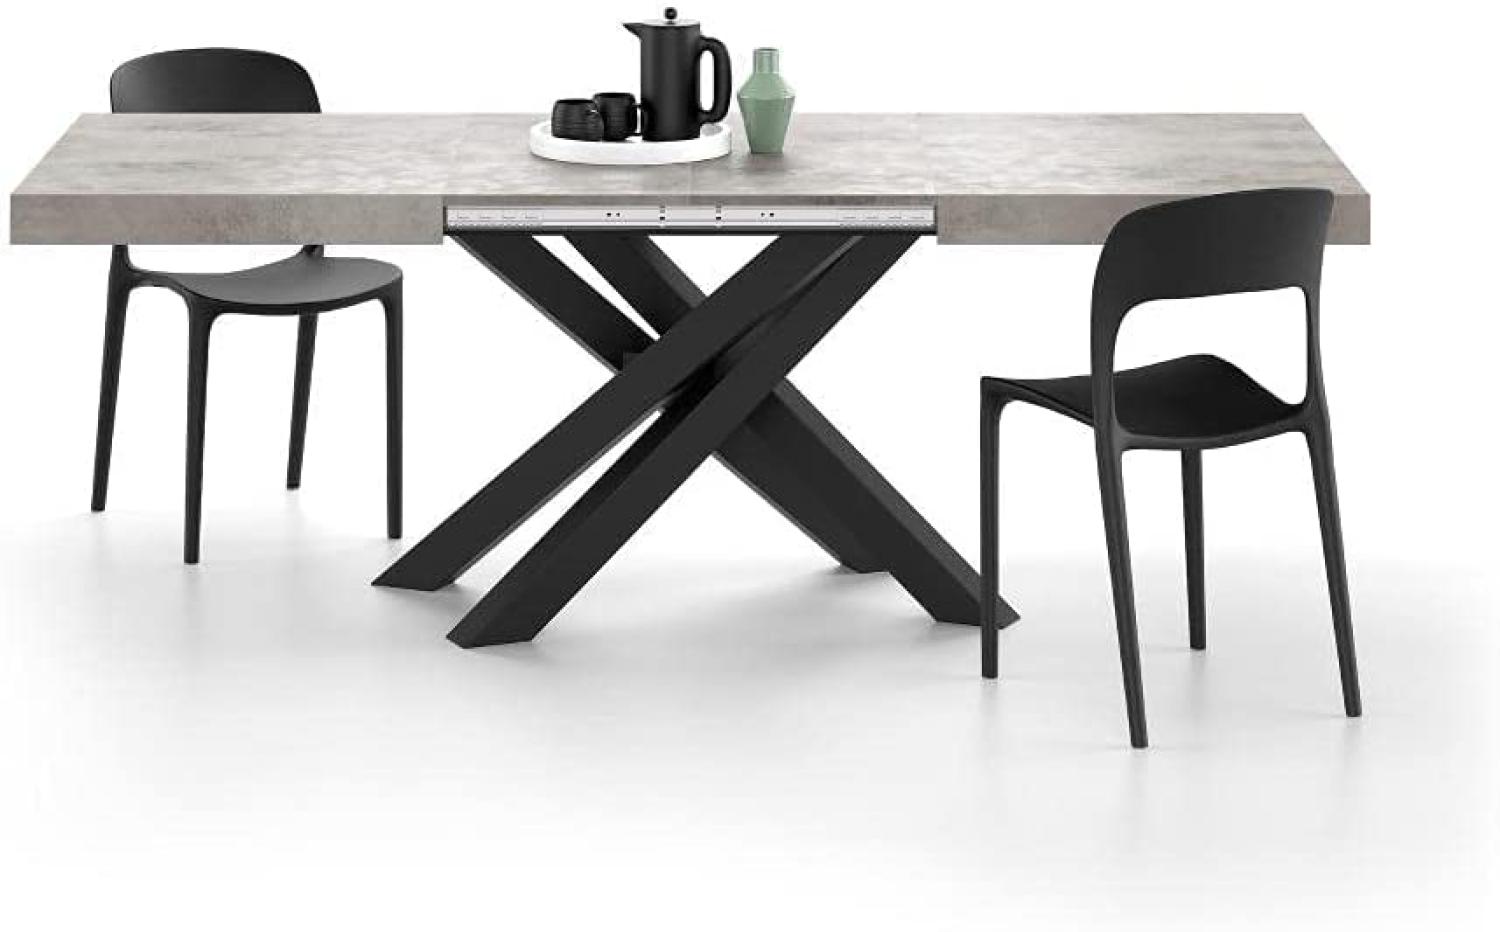 MOBILI FIVER, Ausziehbarer Tisch Emma 140, Grauer Beton, mit schwarzen X-Beinen, Laminiert/Eisen, Made in Italy Bild 1